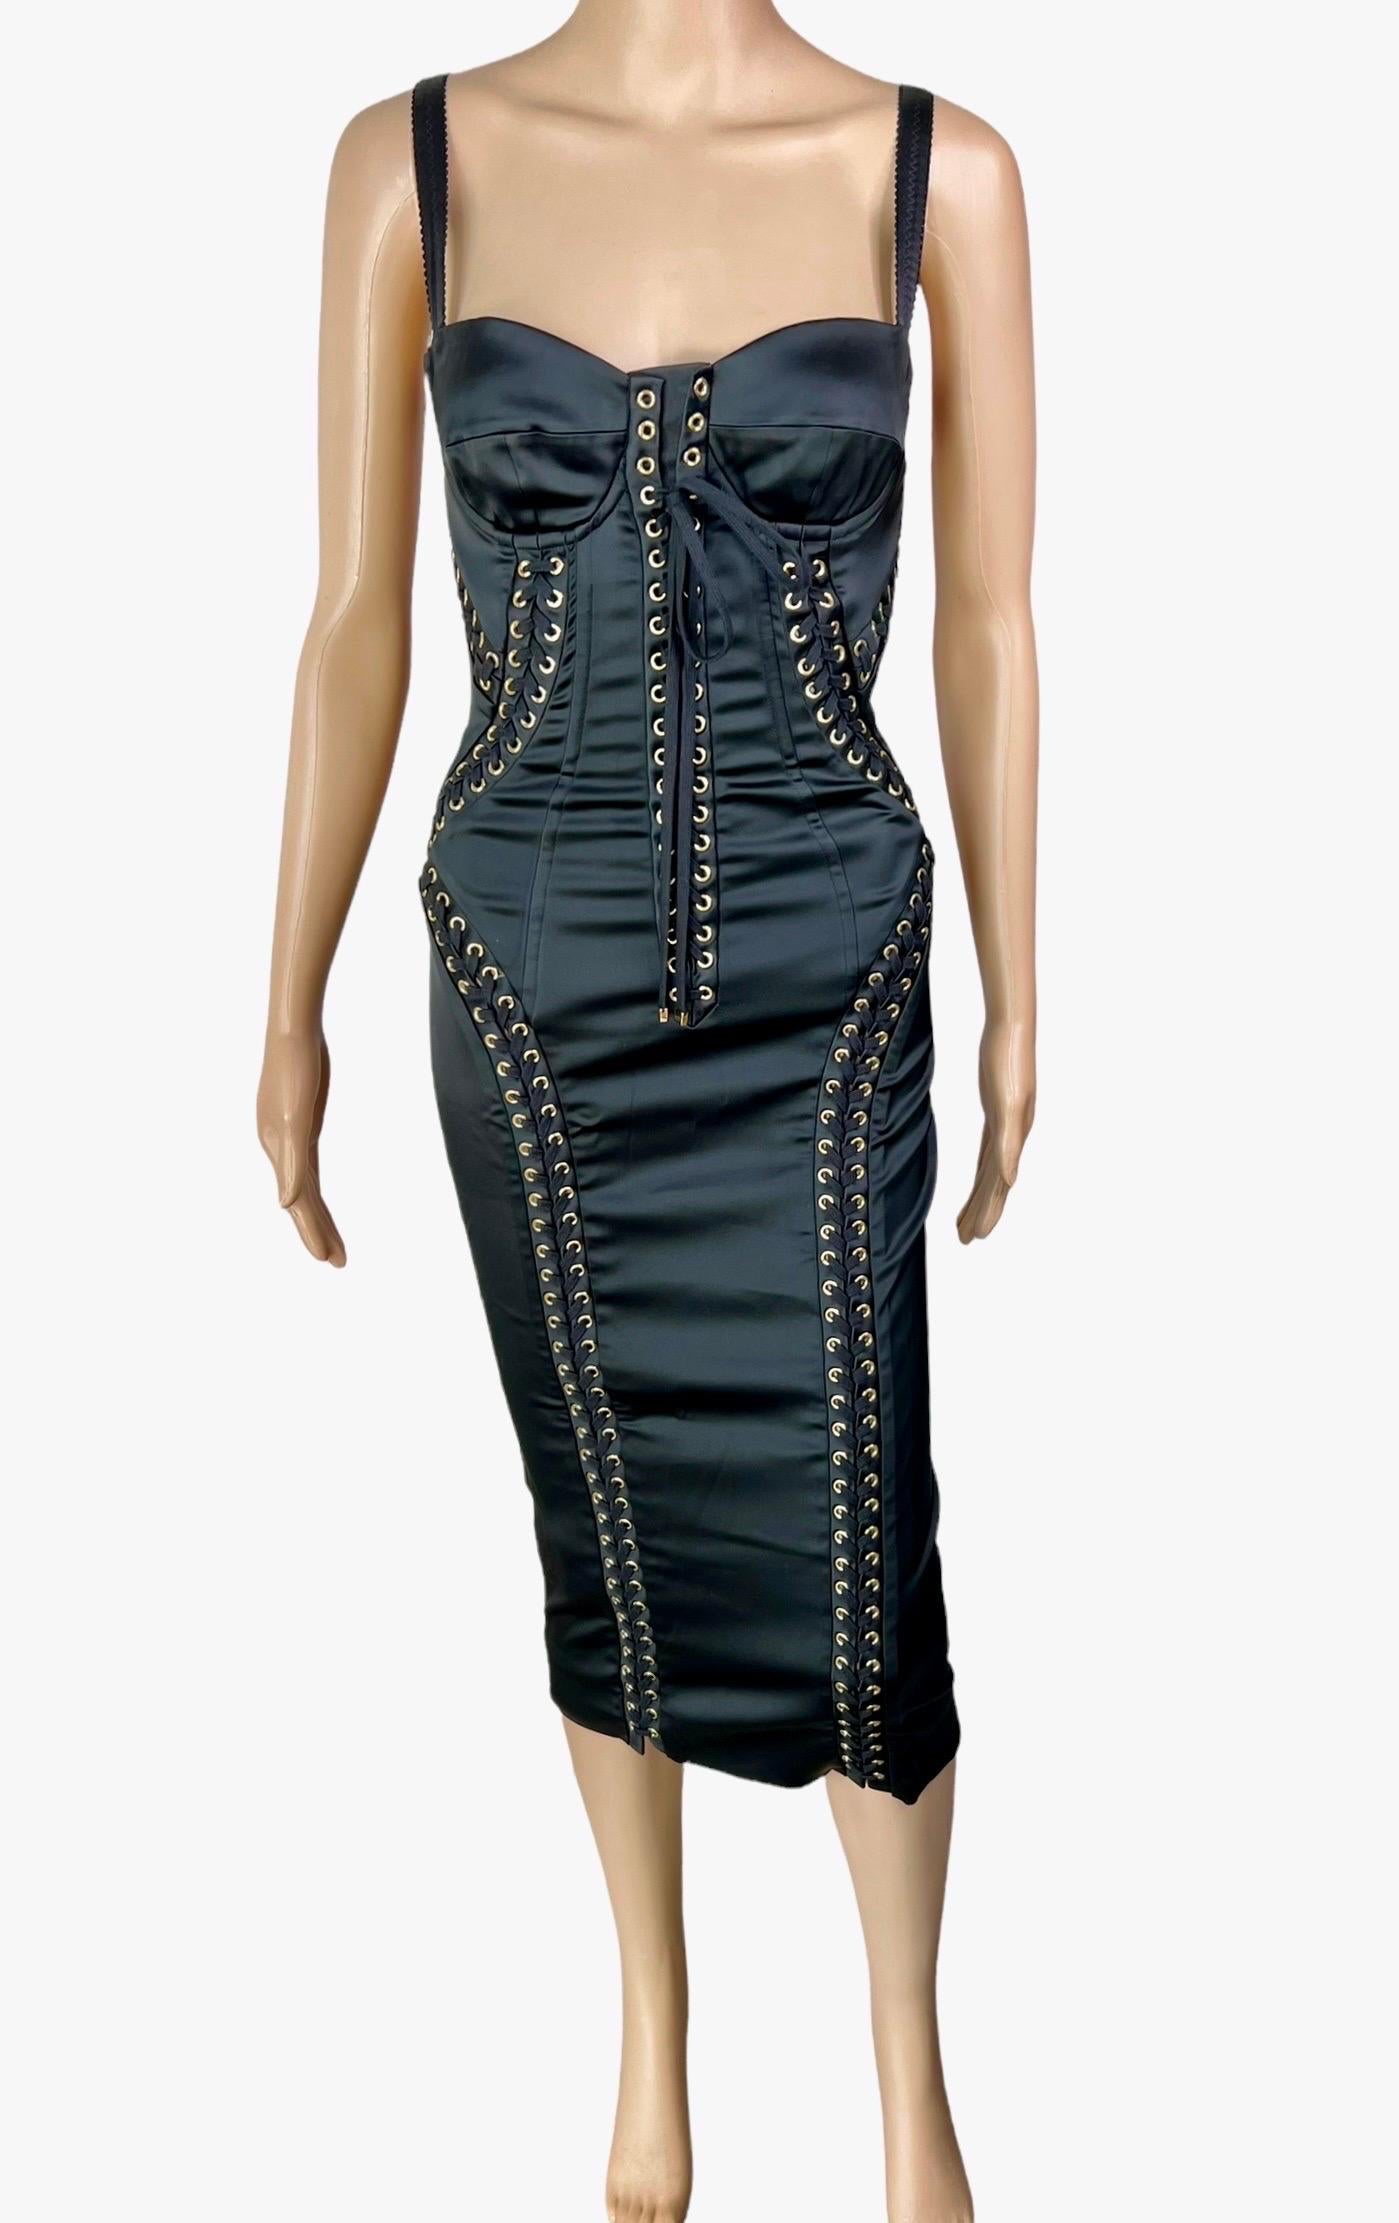 Dolce & Gabbana - Robe midi moulante noire moulante à lacets et bustier avec corset, taille IT 36
